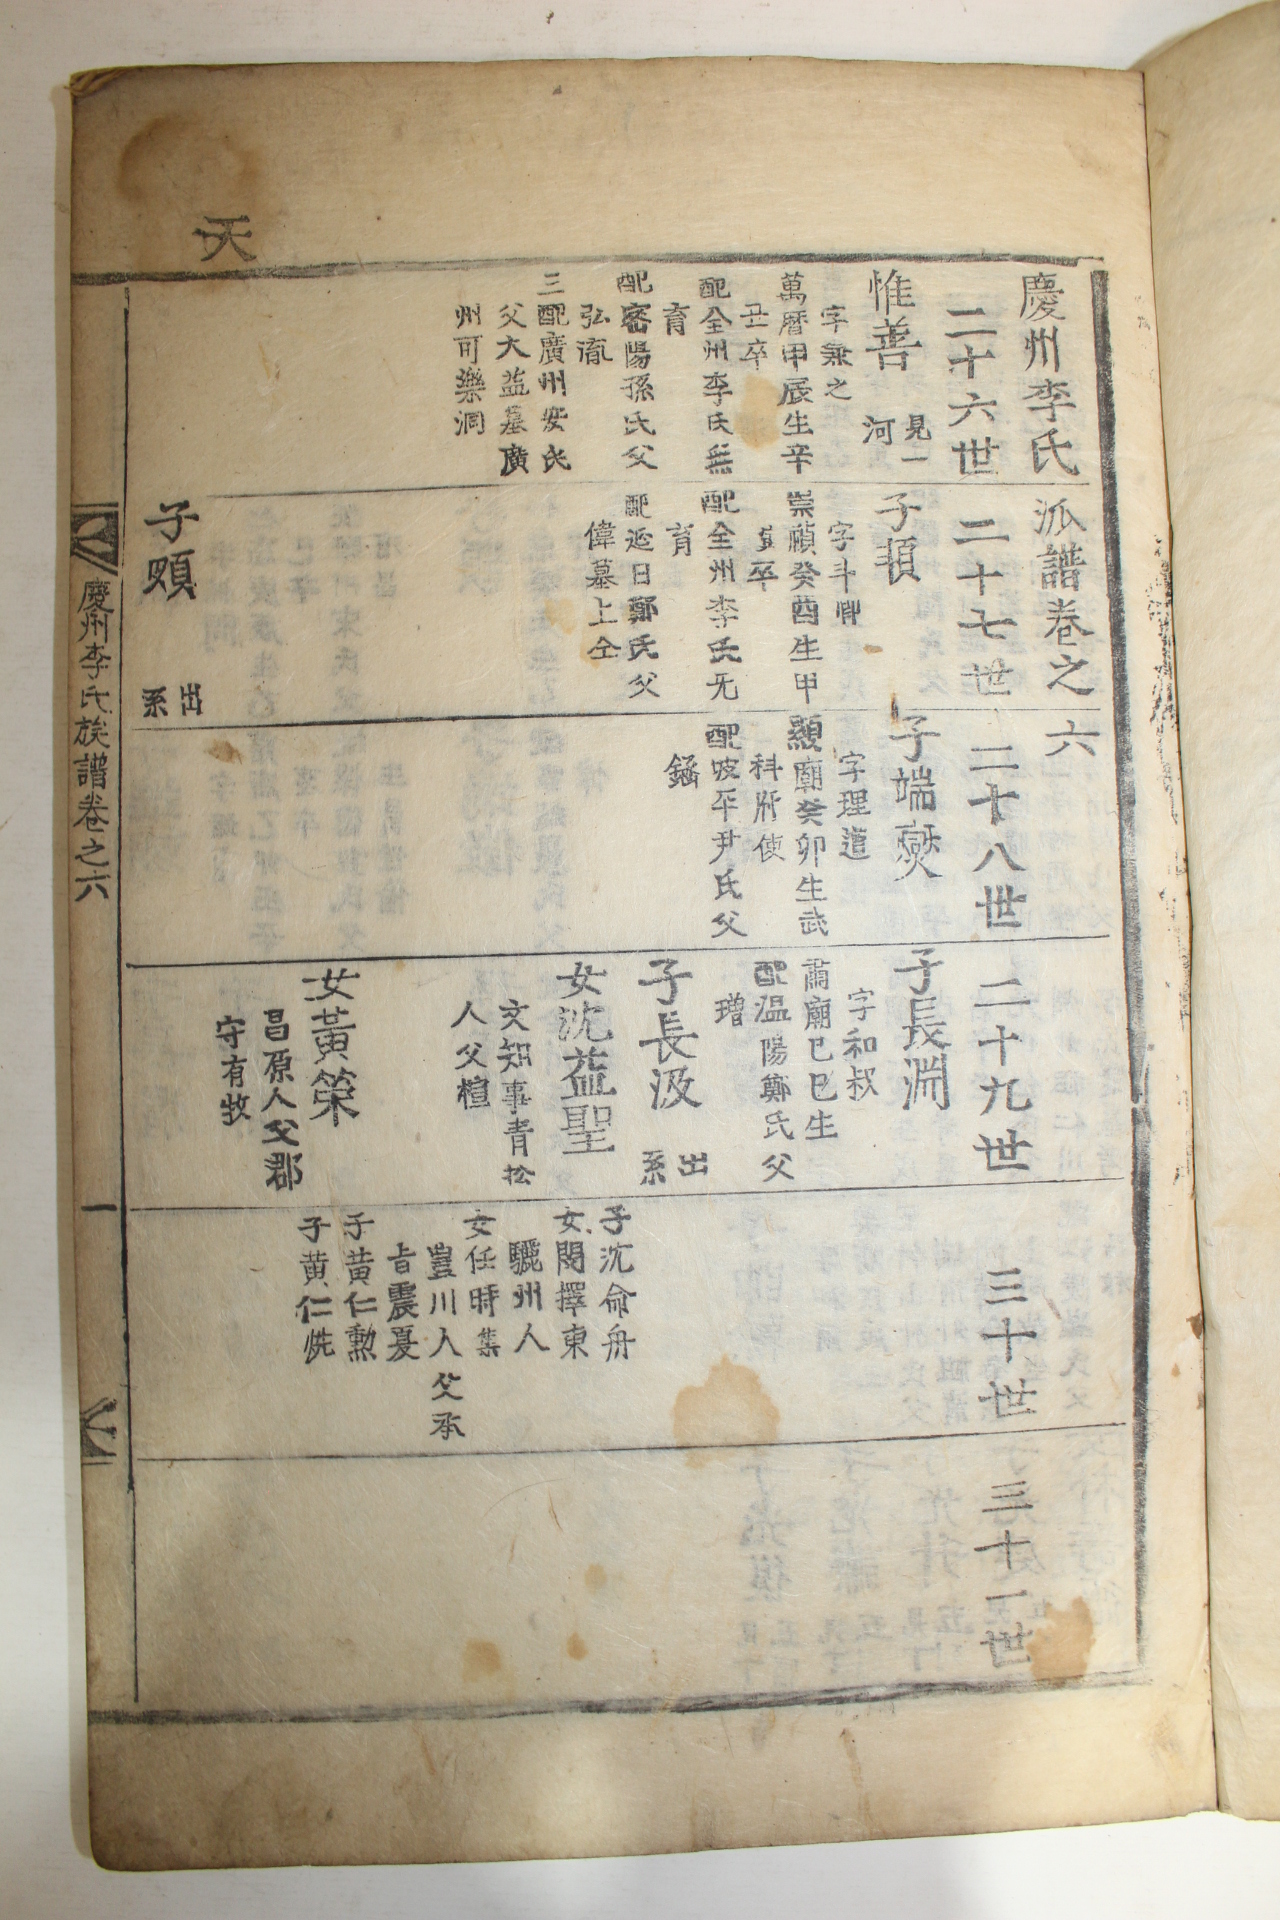 1873년 경주이씨국당공파보(慶州李氏菊堂公派譜) 2책